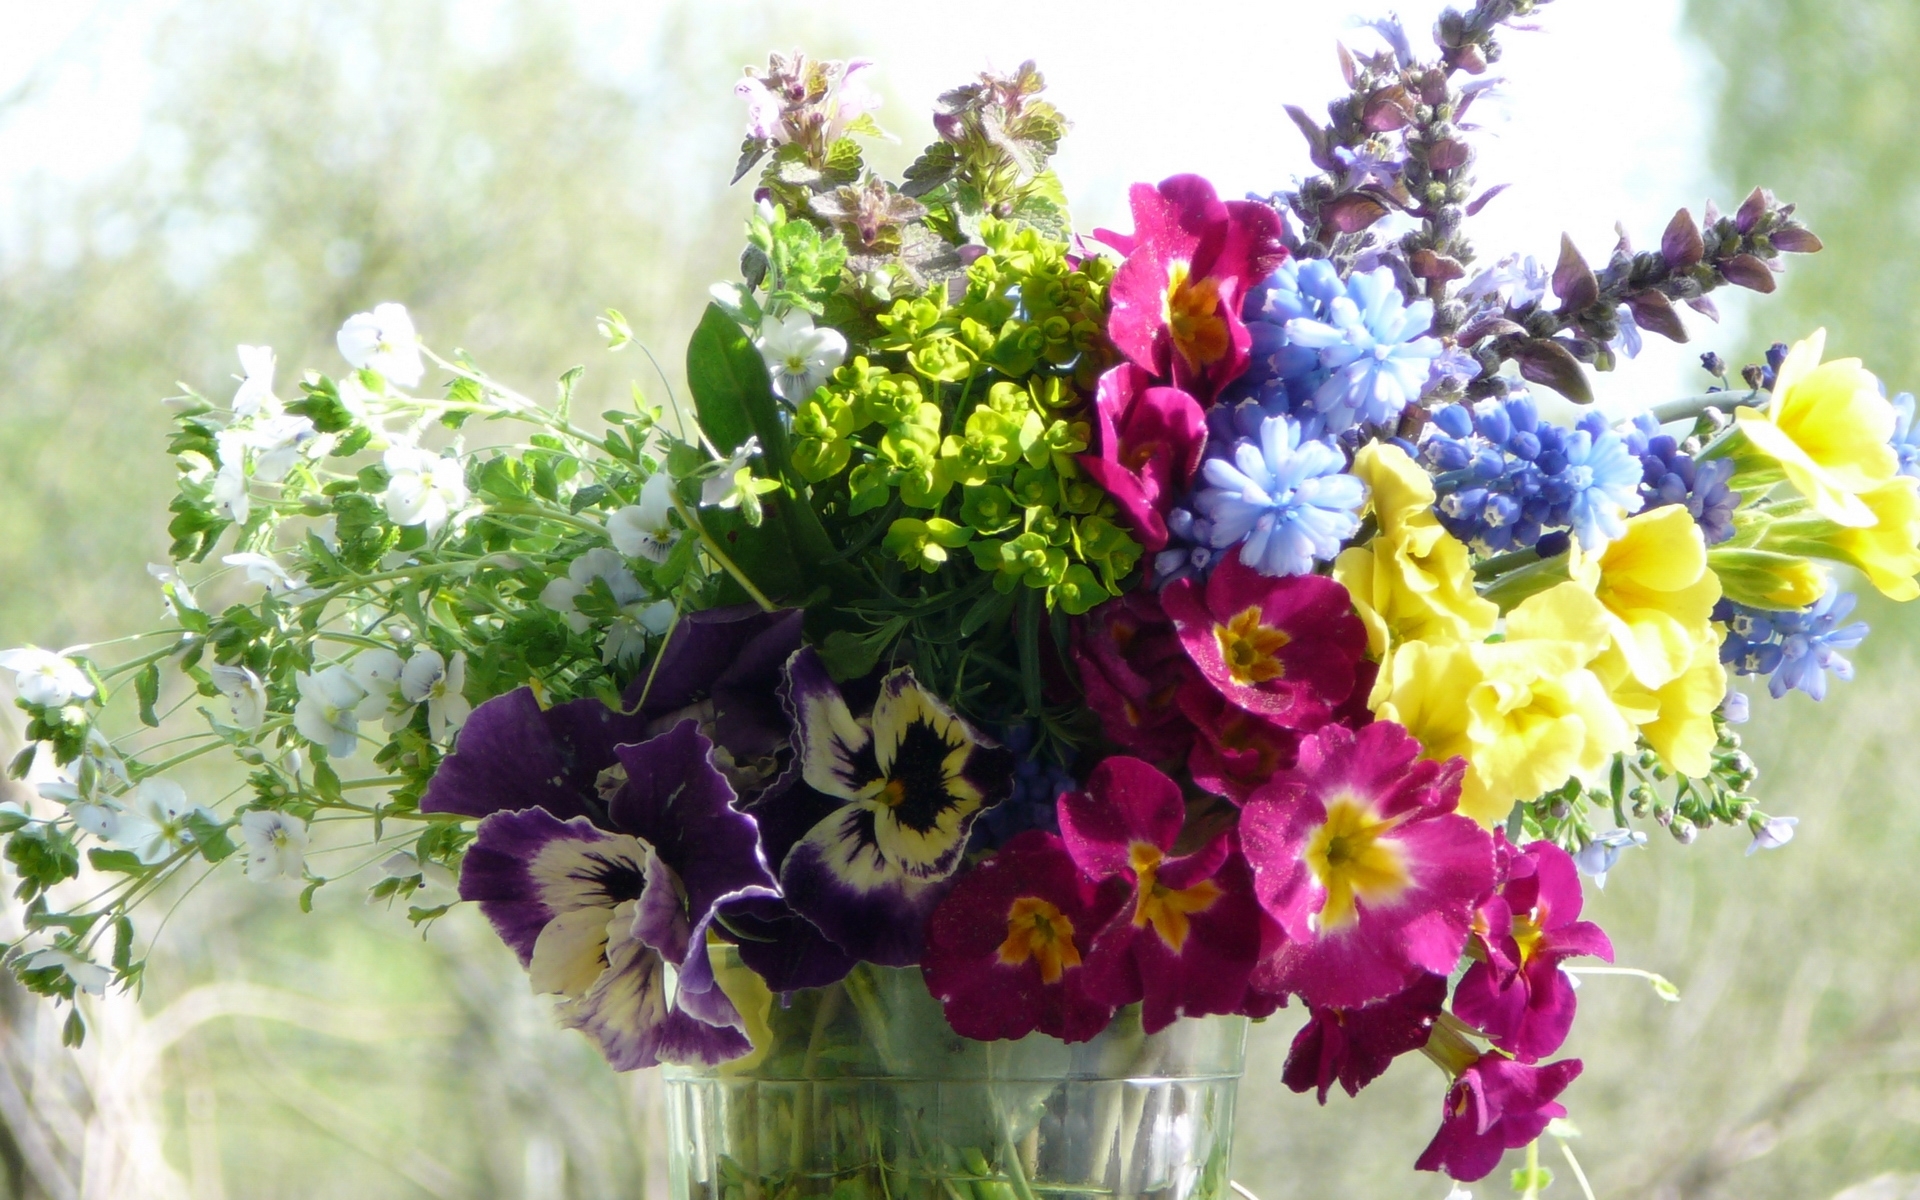 Скачать обои бесплатно Растения, Цветы, Букеты картинка на рабочий стол ПК